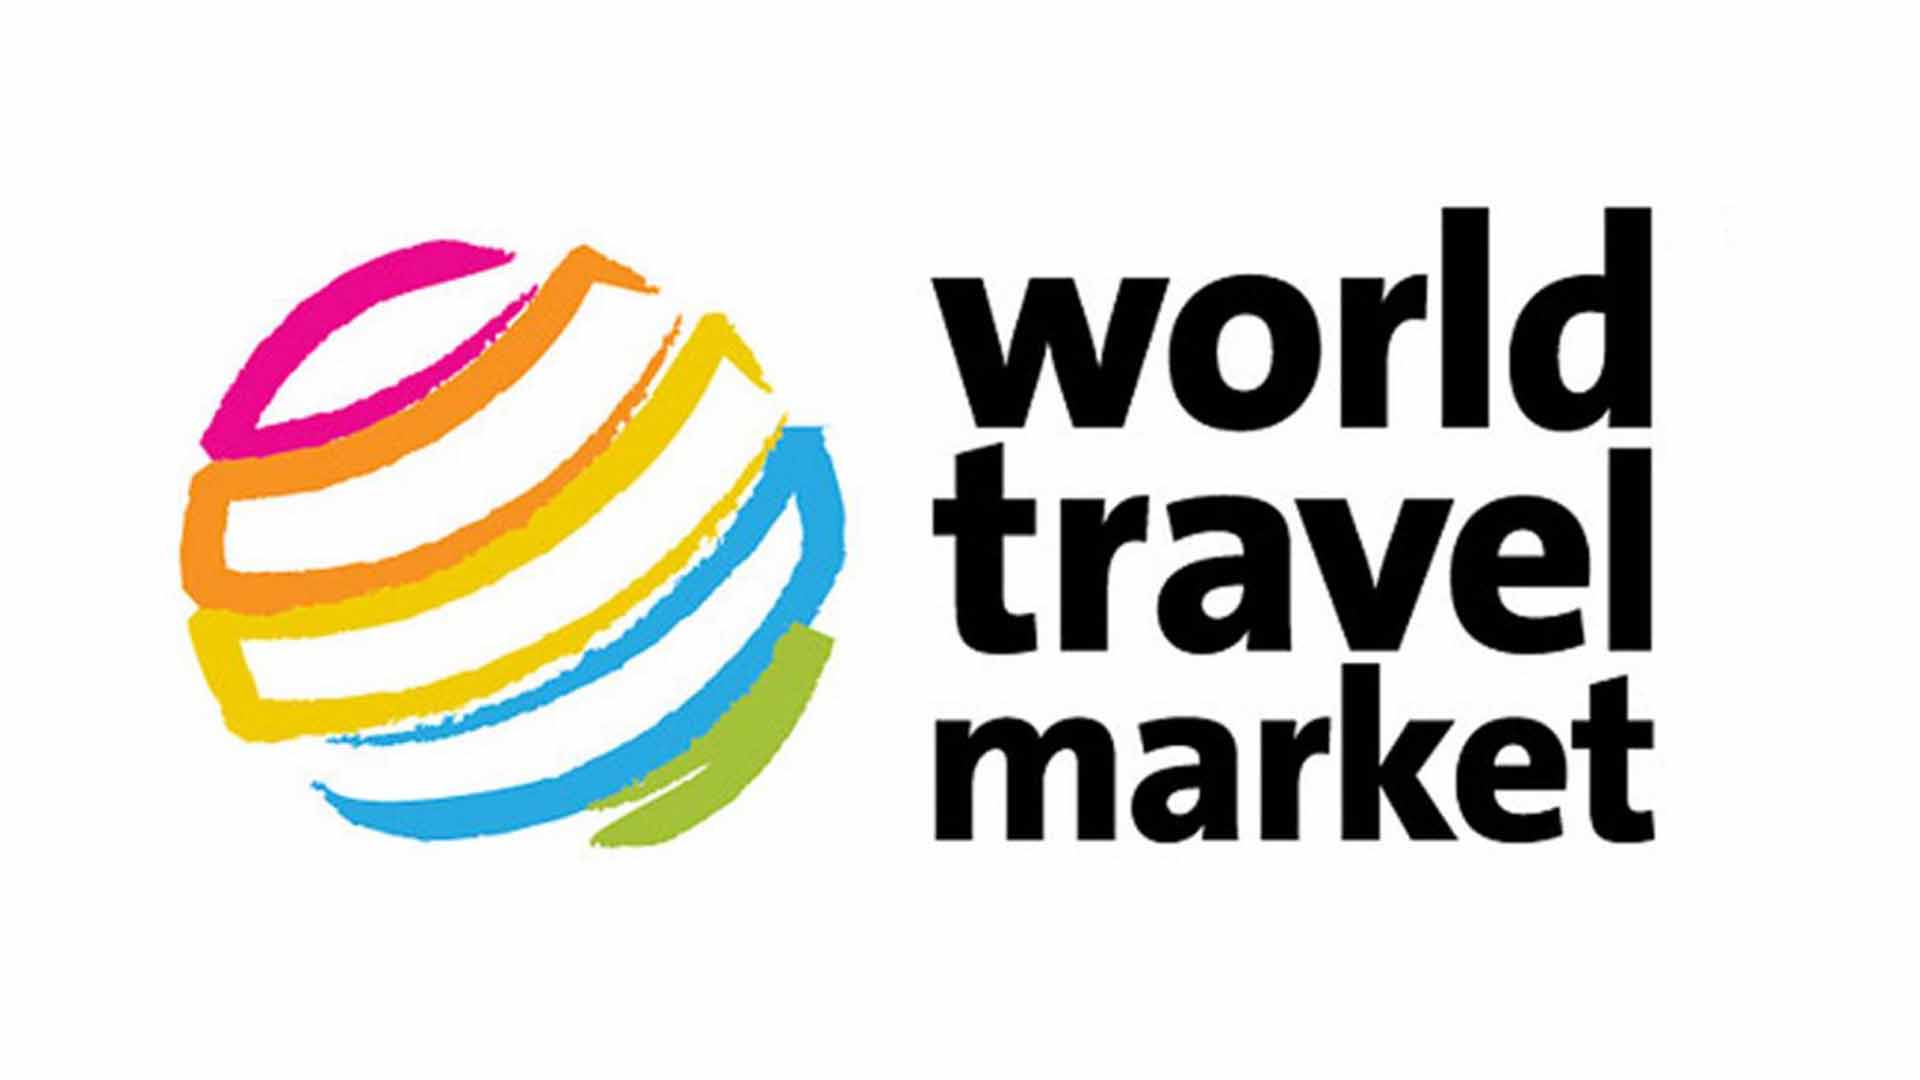 La World Travel Market 2015 muestra lo mejor del turismo mundial, la representación criolla “sol y playa” acapara miradas